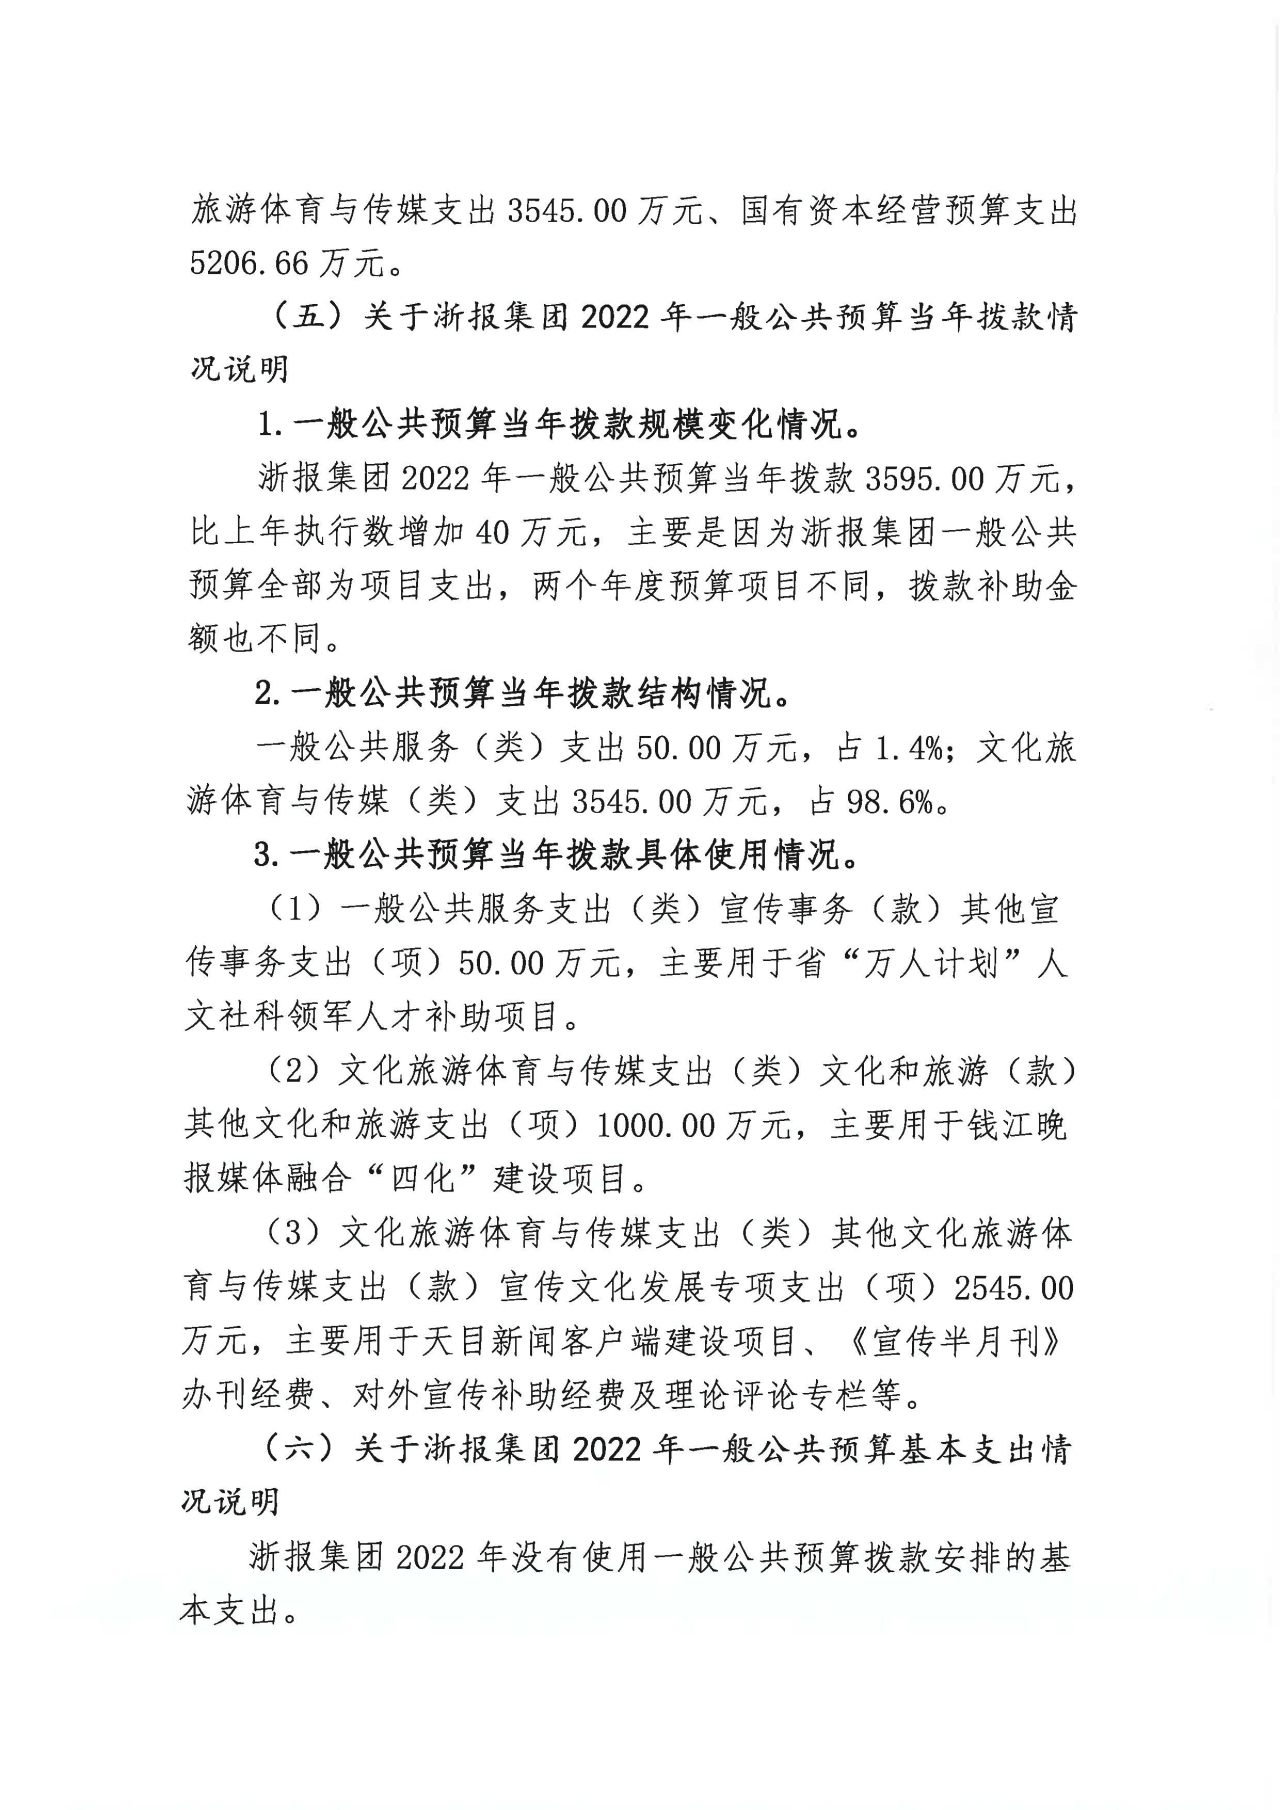 浙江日报报业集团2022年部门预算公开_页面_06.jpg